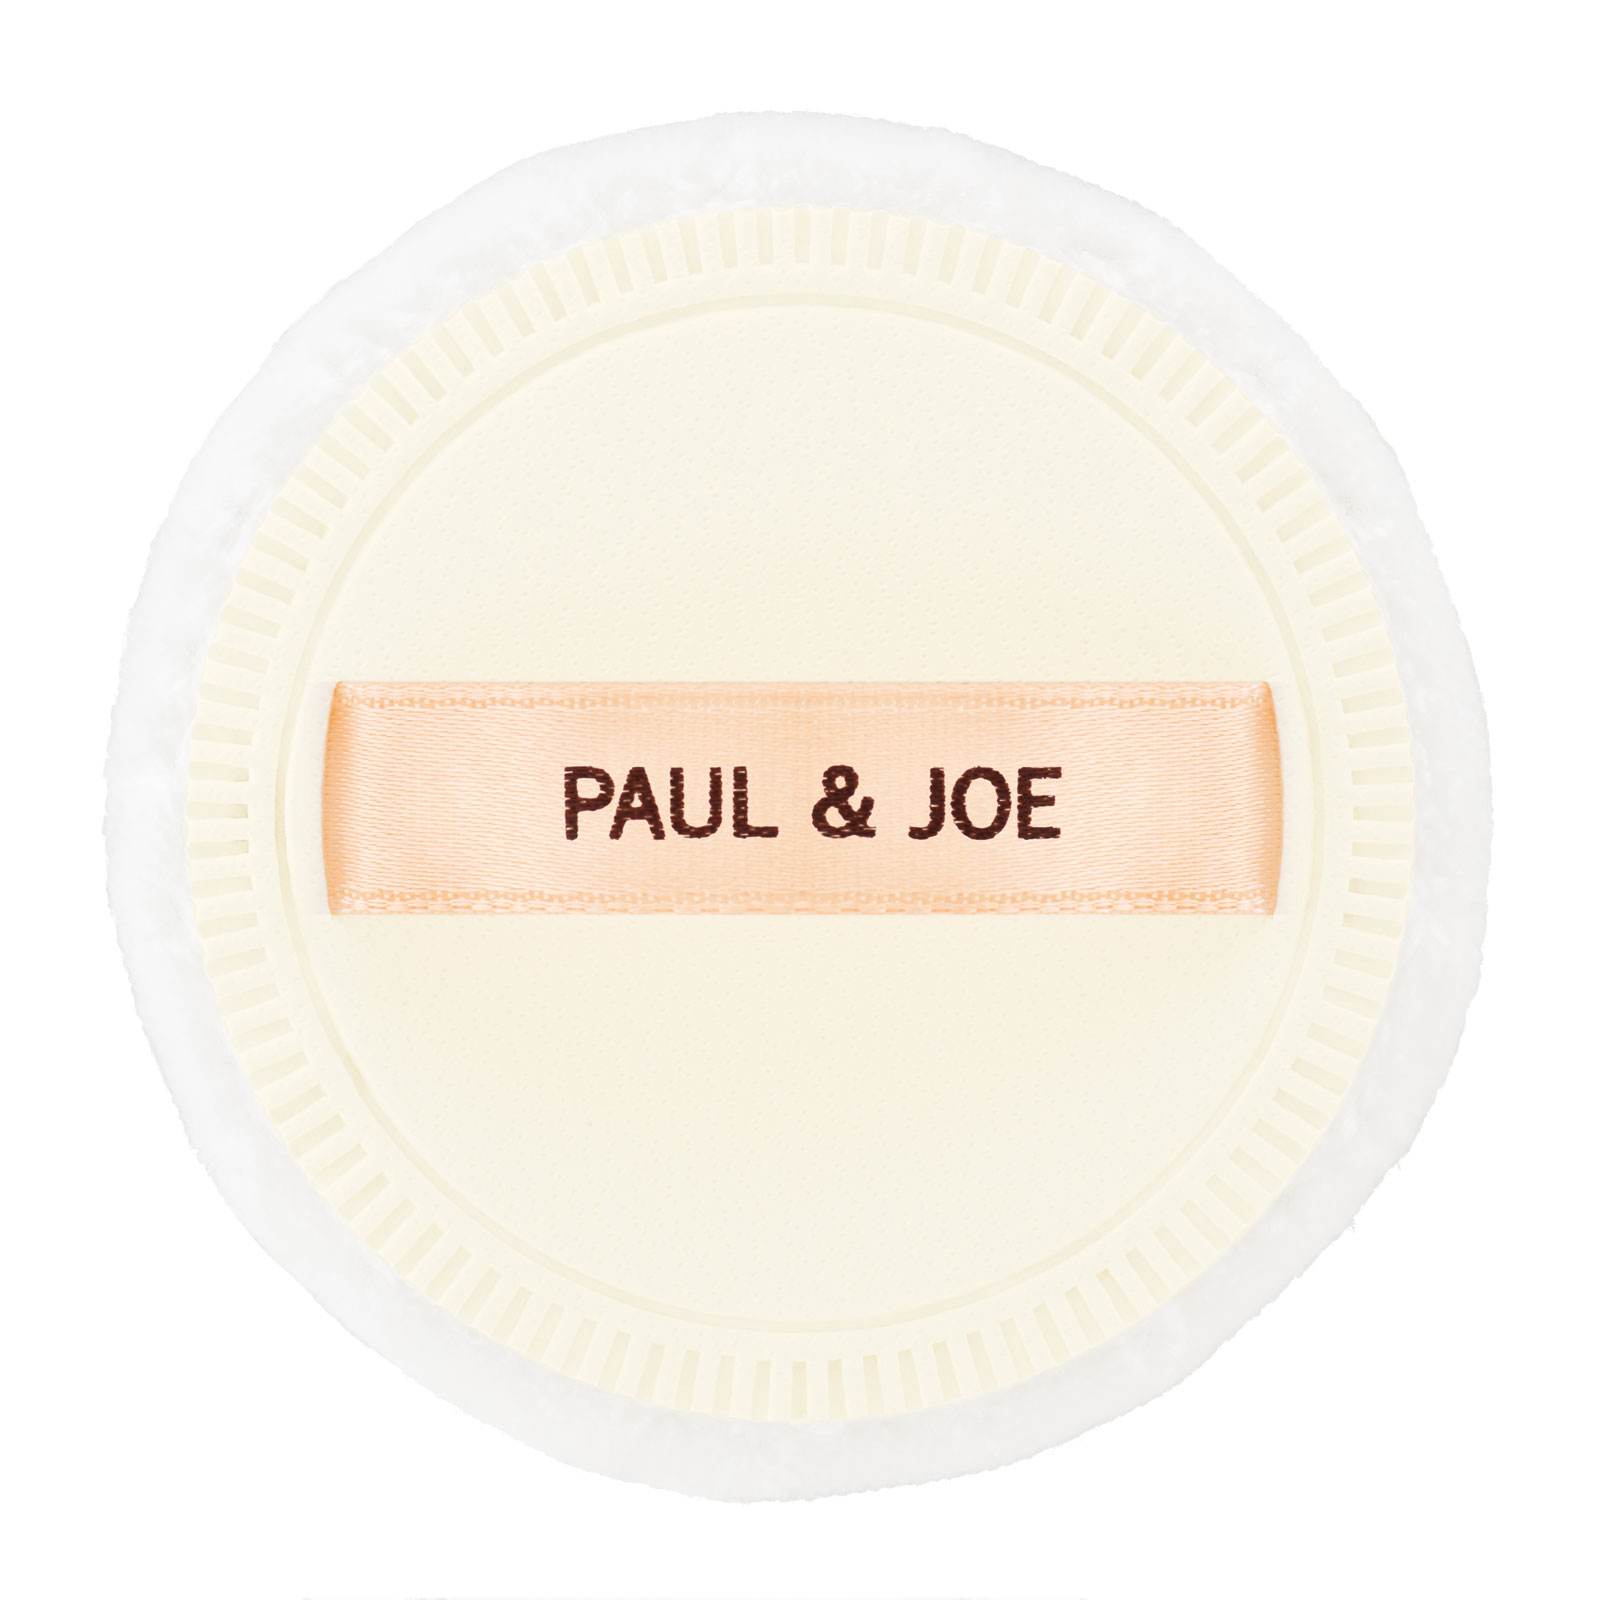 PAUL & JOE 柔光素肌定妆粉饼粉扑